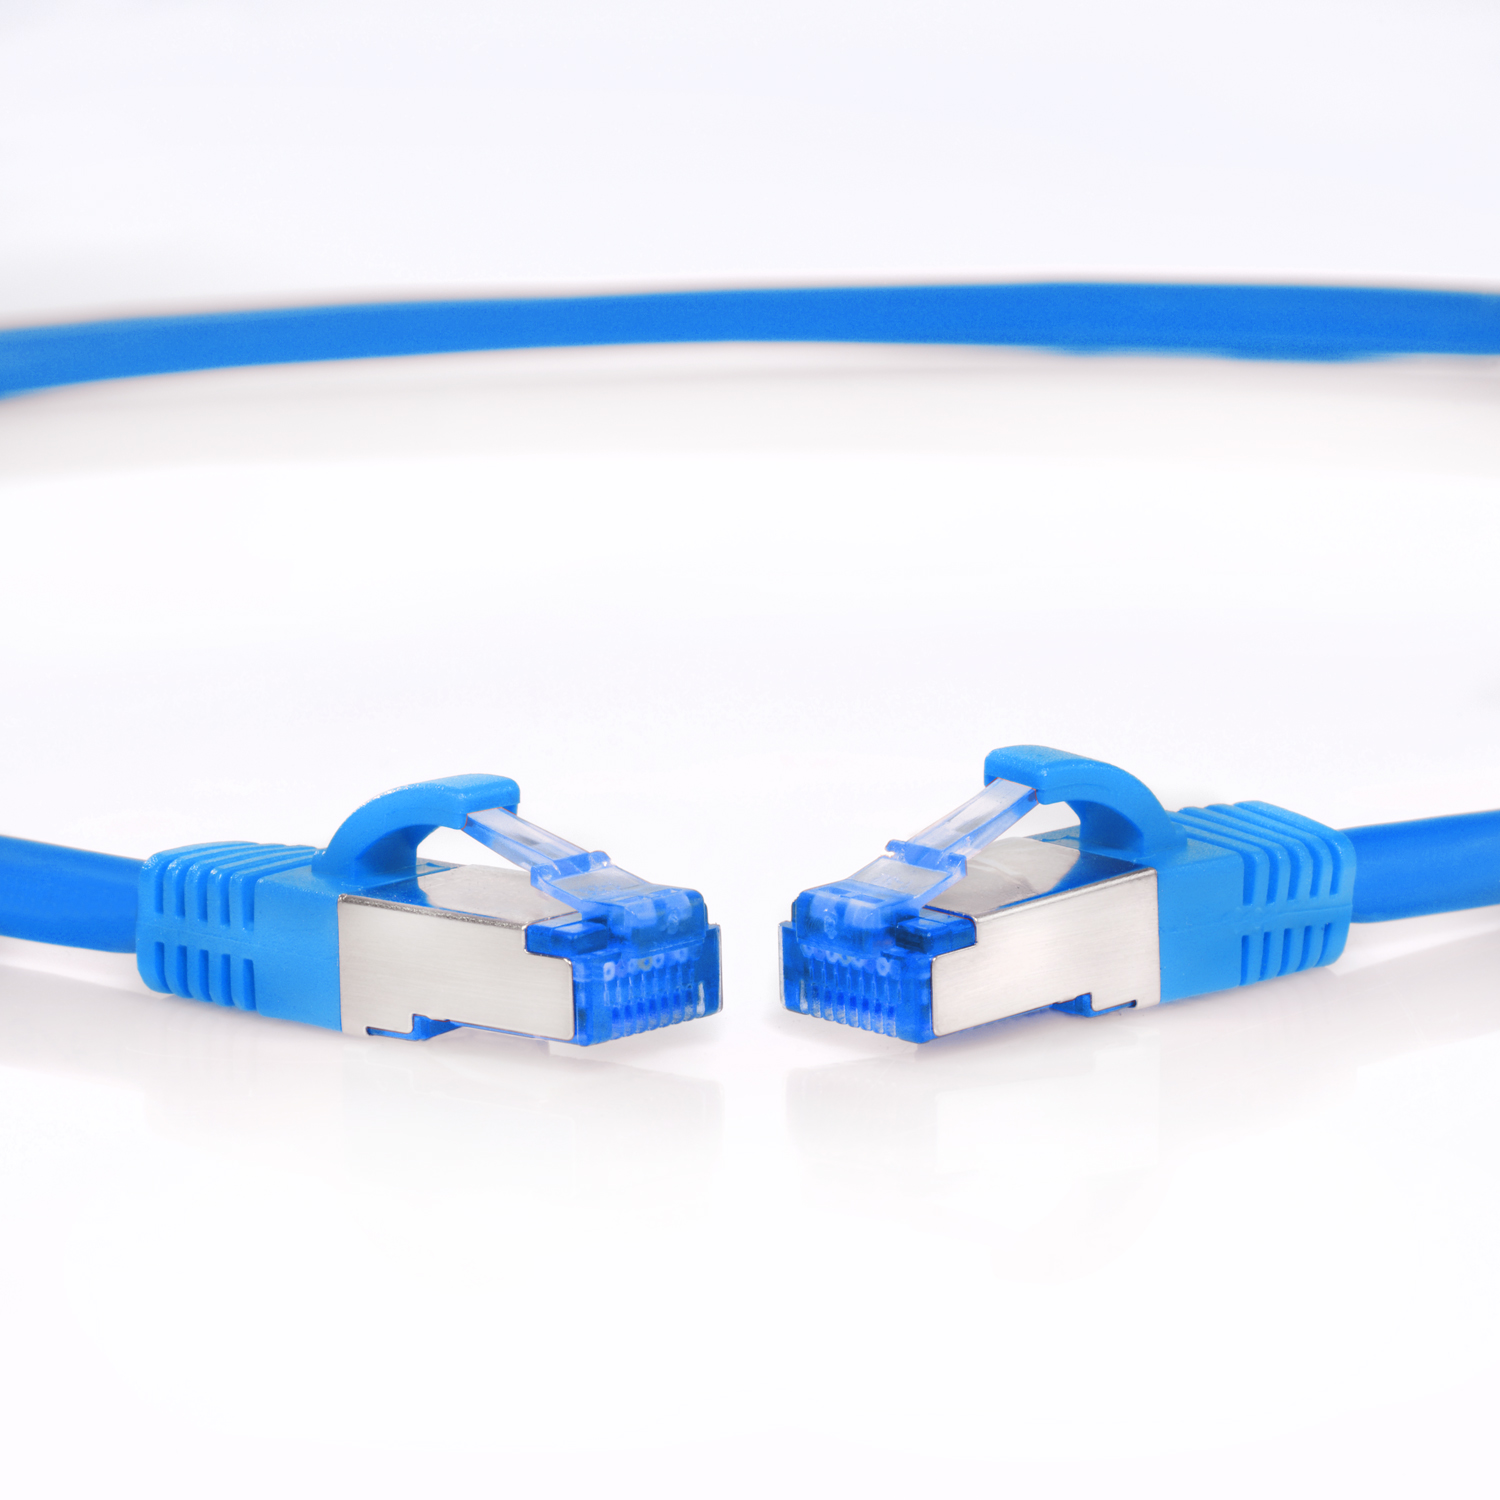 TPFNET 2m Patchkabel / Netzwerkkabel, S/FTP blau, 10GBit, 2 m Netzwerkkabel